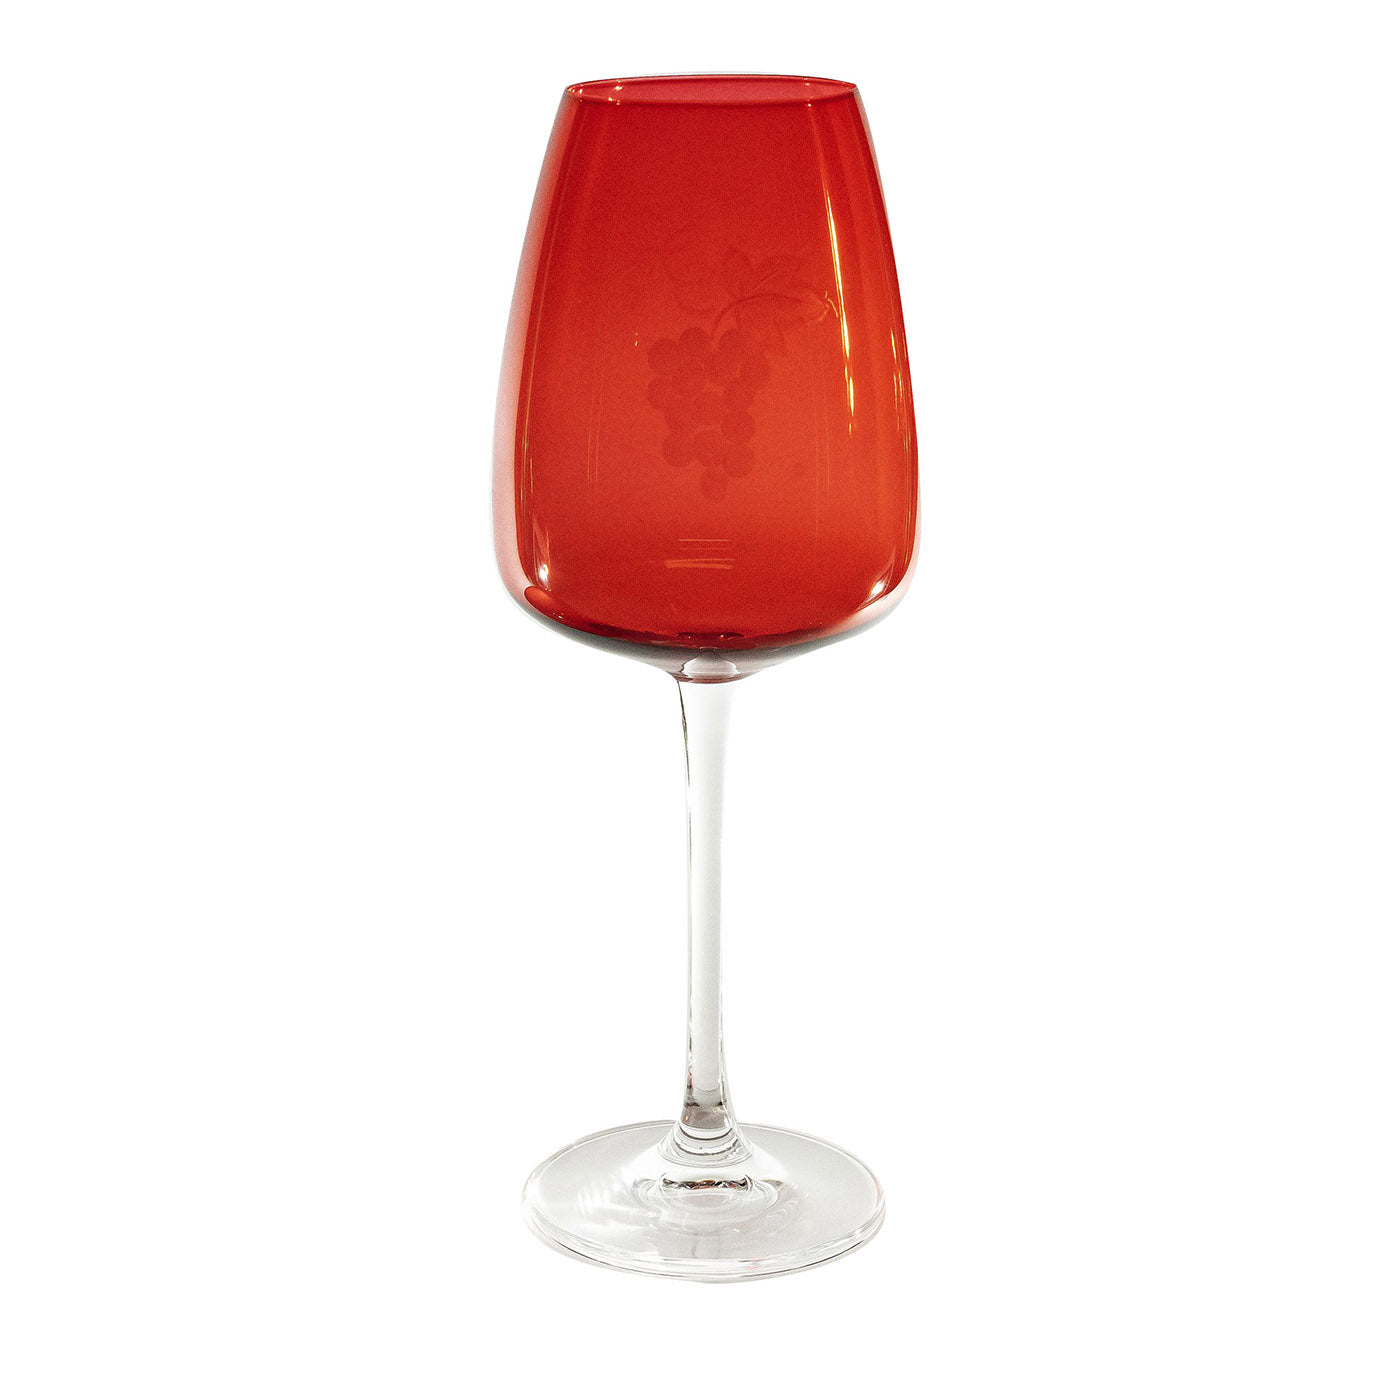 Parigi Juego de 6 vasos de agua con tallo rojo y transparente grabados - Vista principal